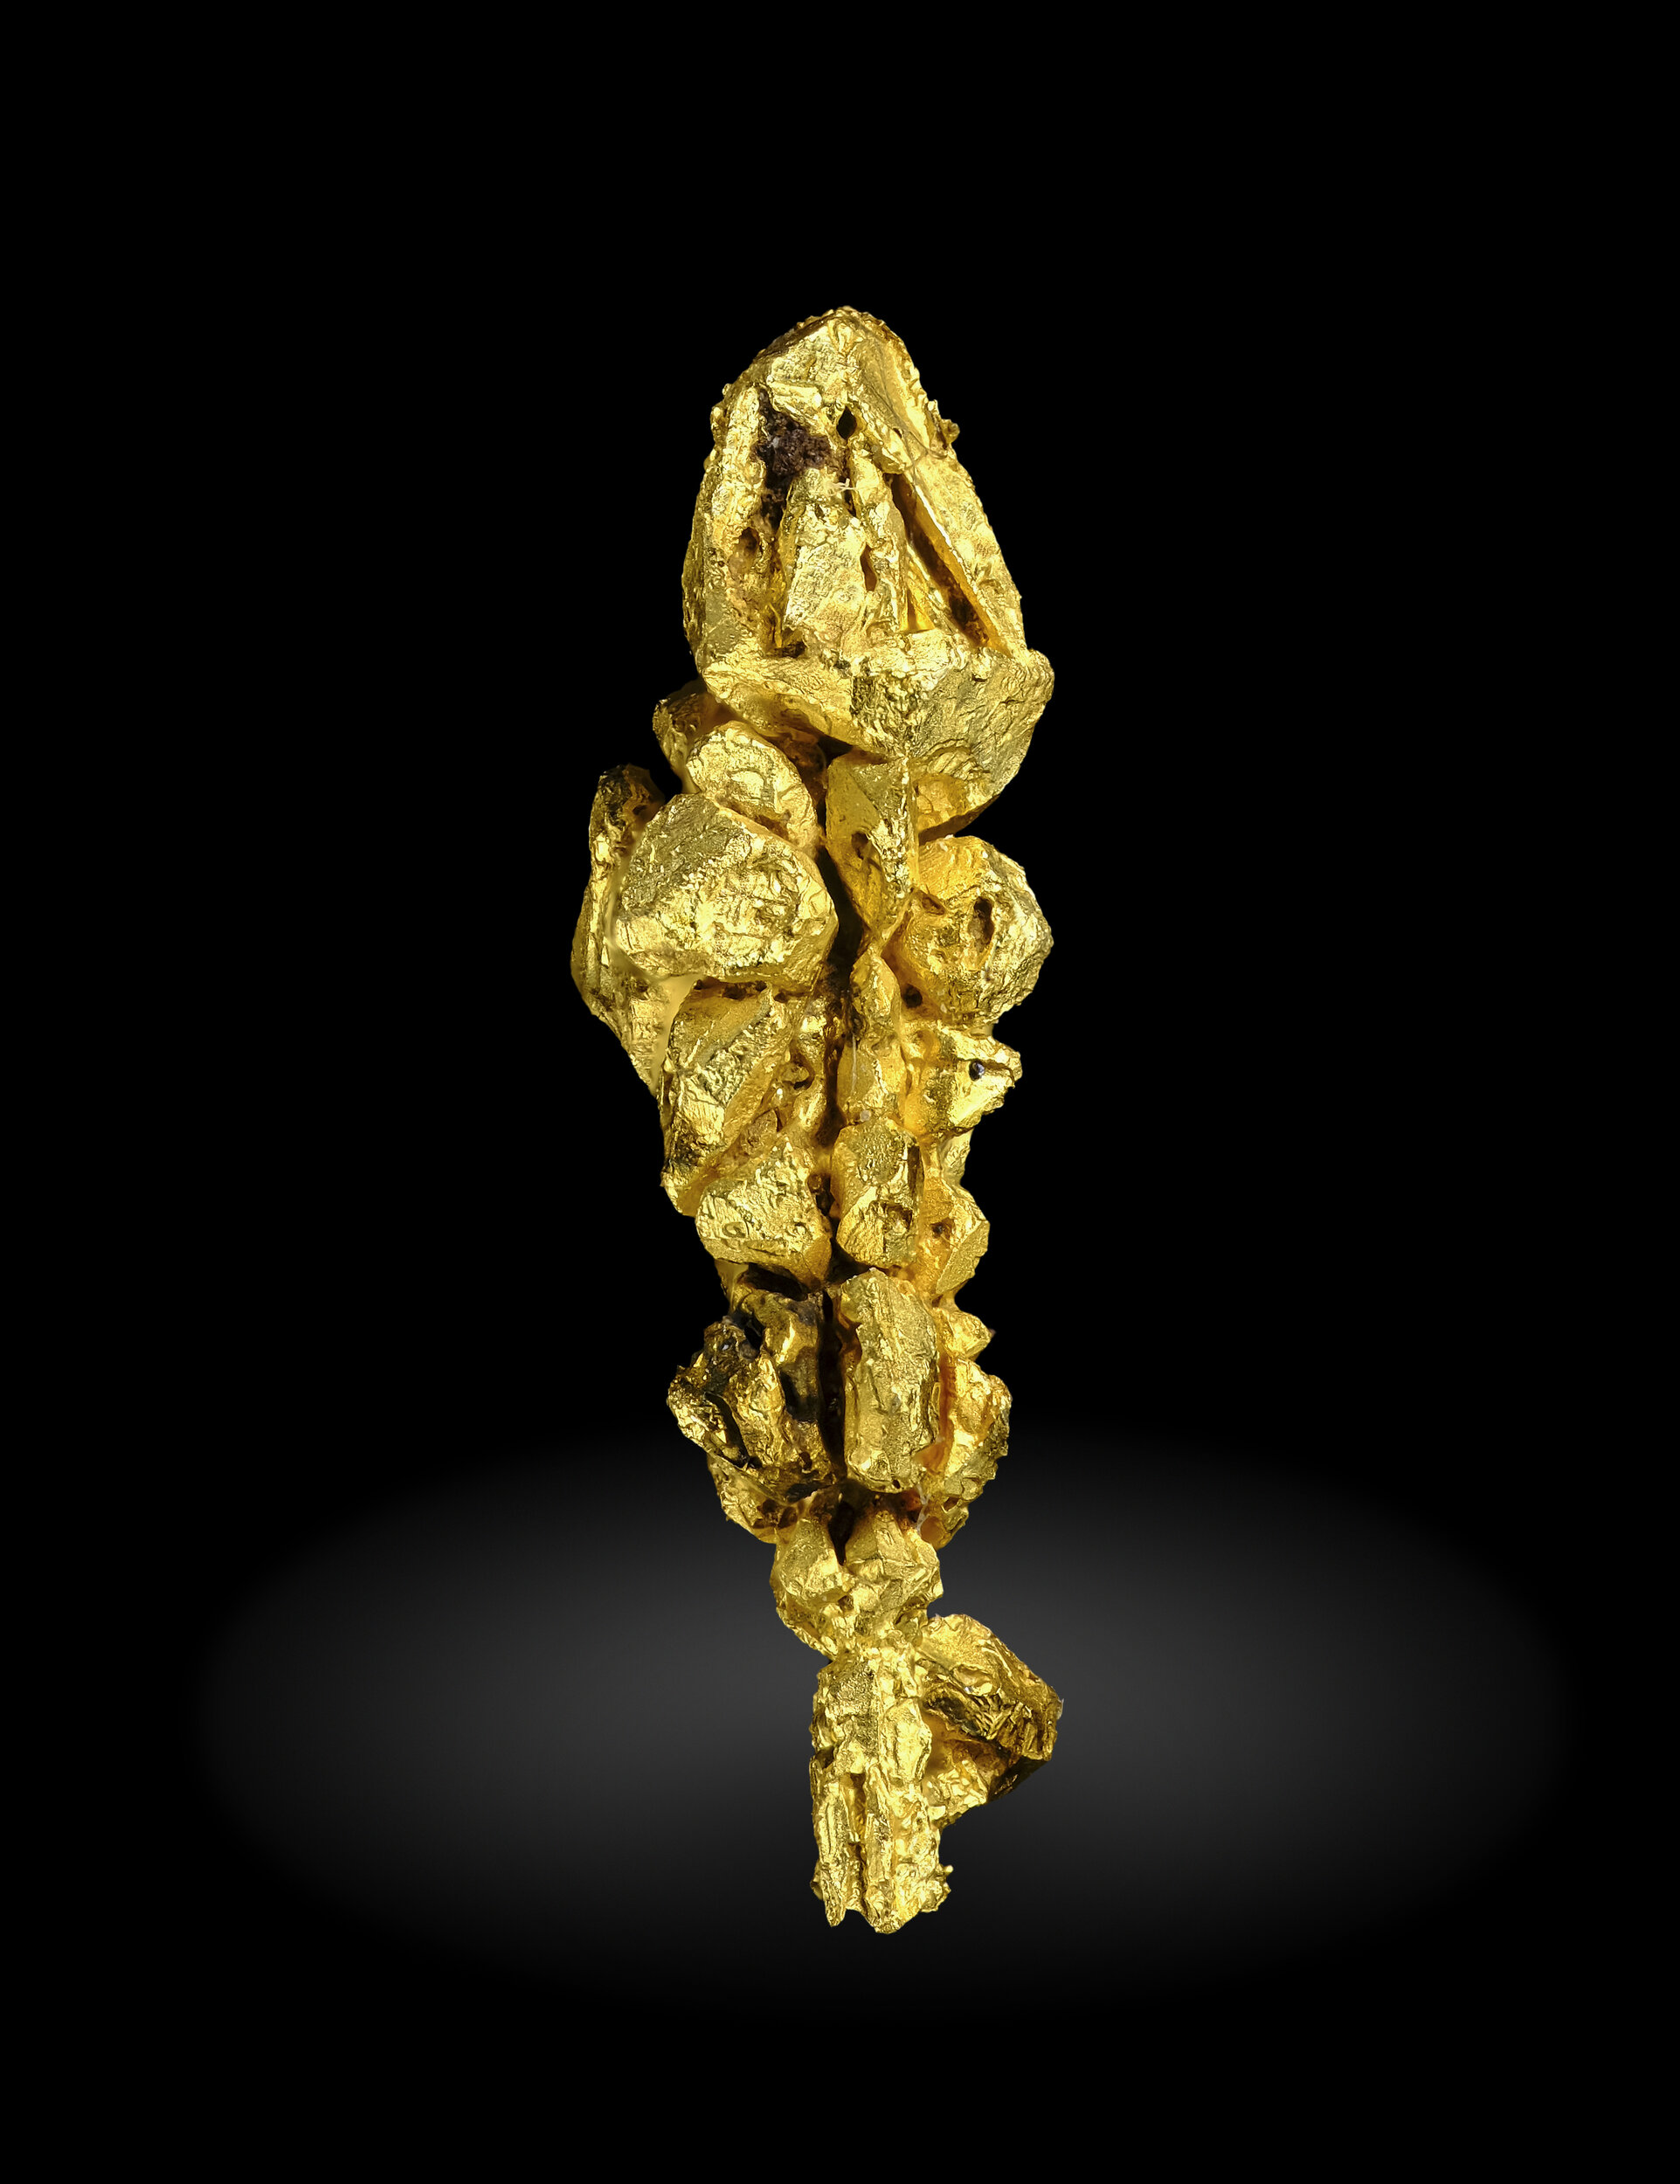 specimens/s_imagesAO2/Gold-EXM61AO2_3101_r.jpg